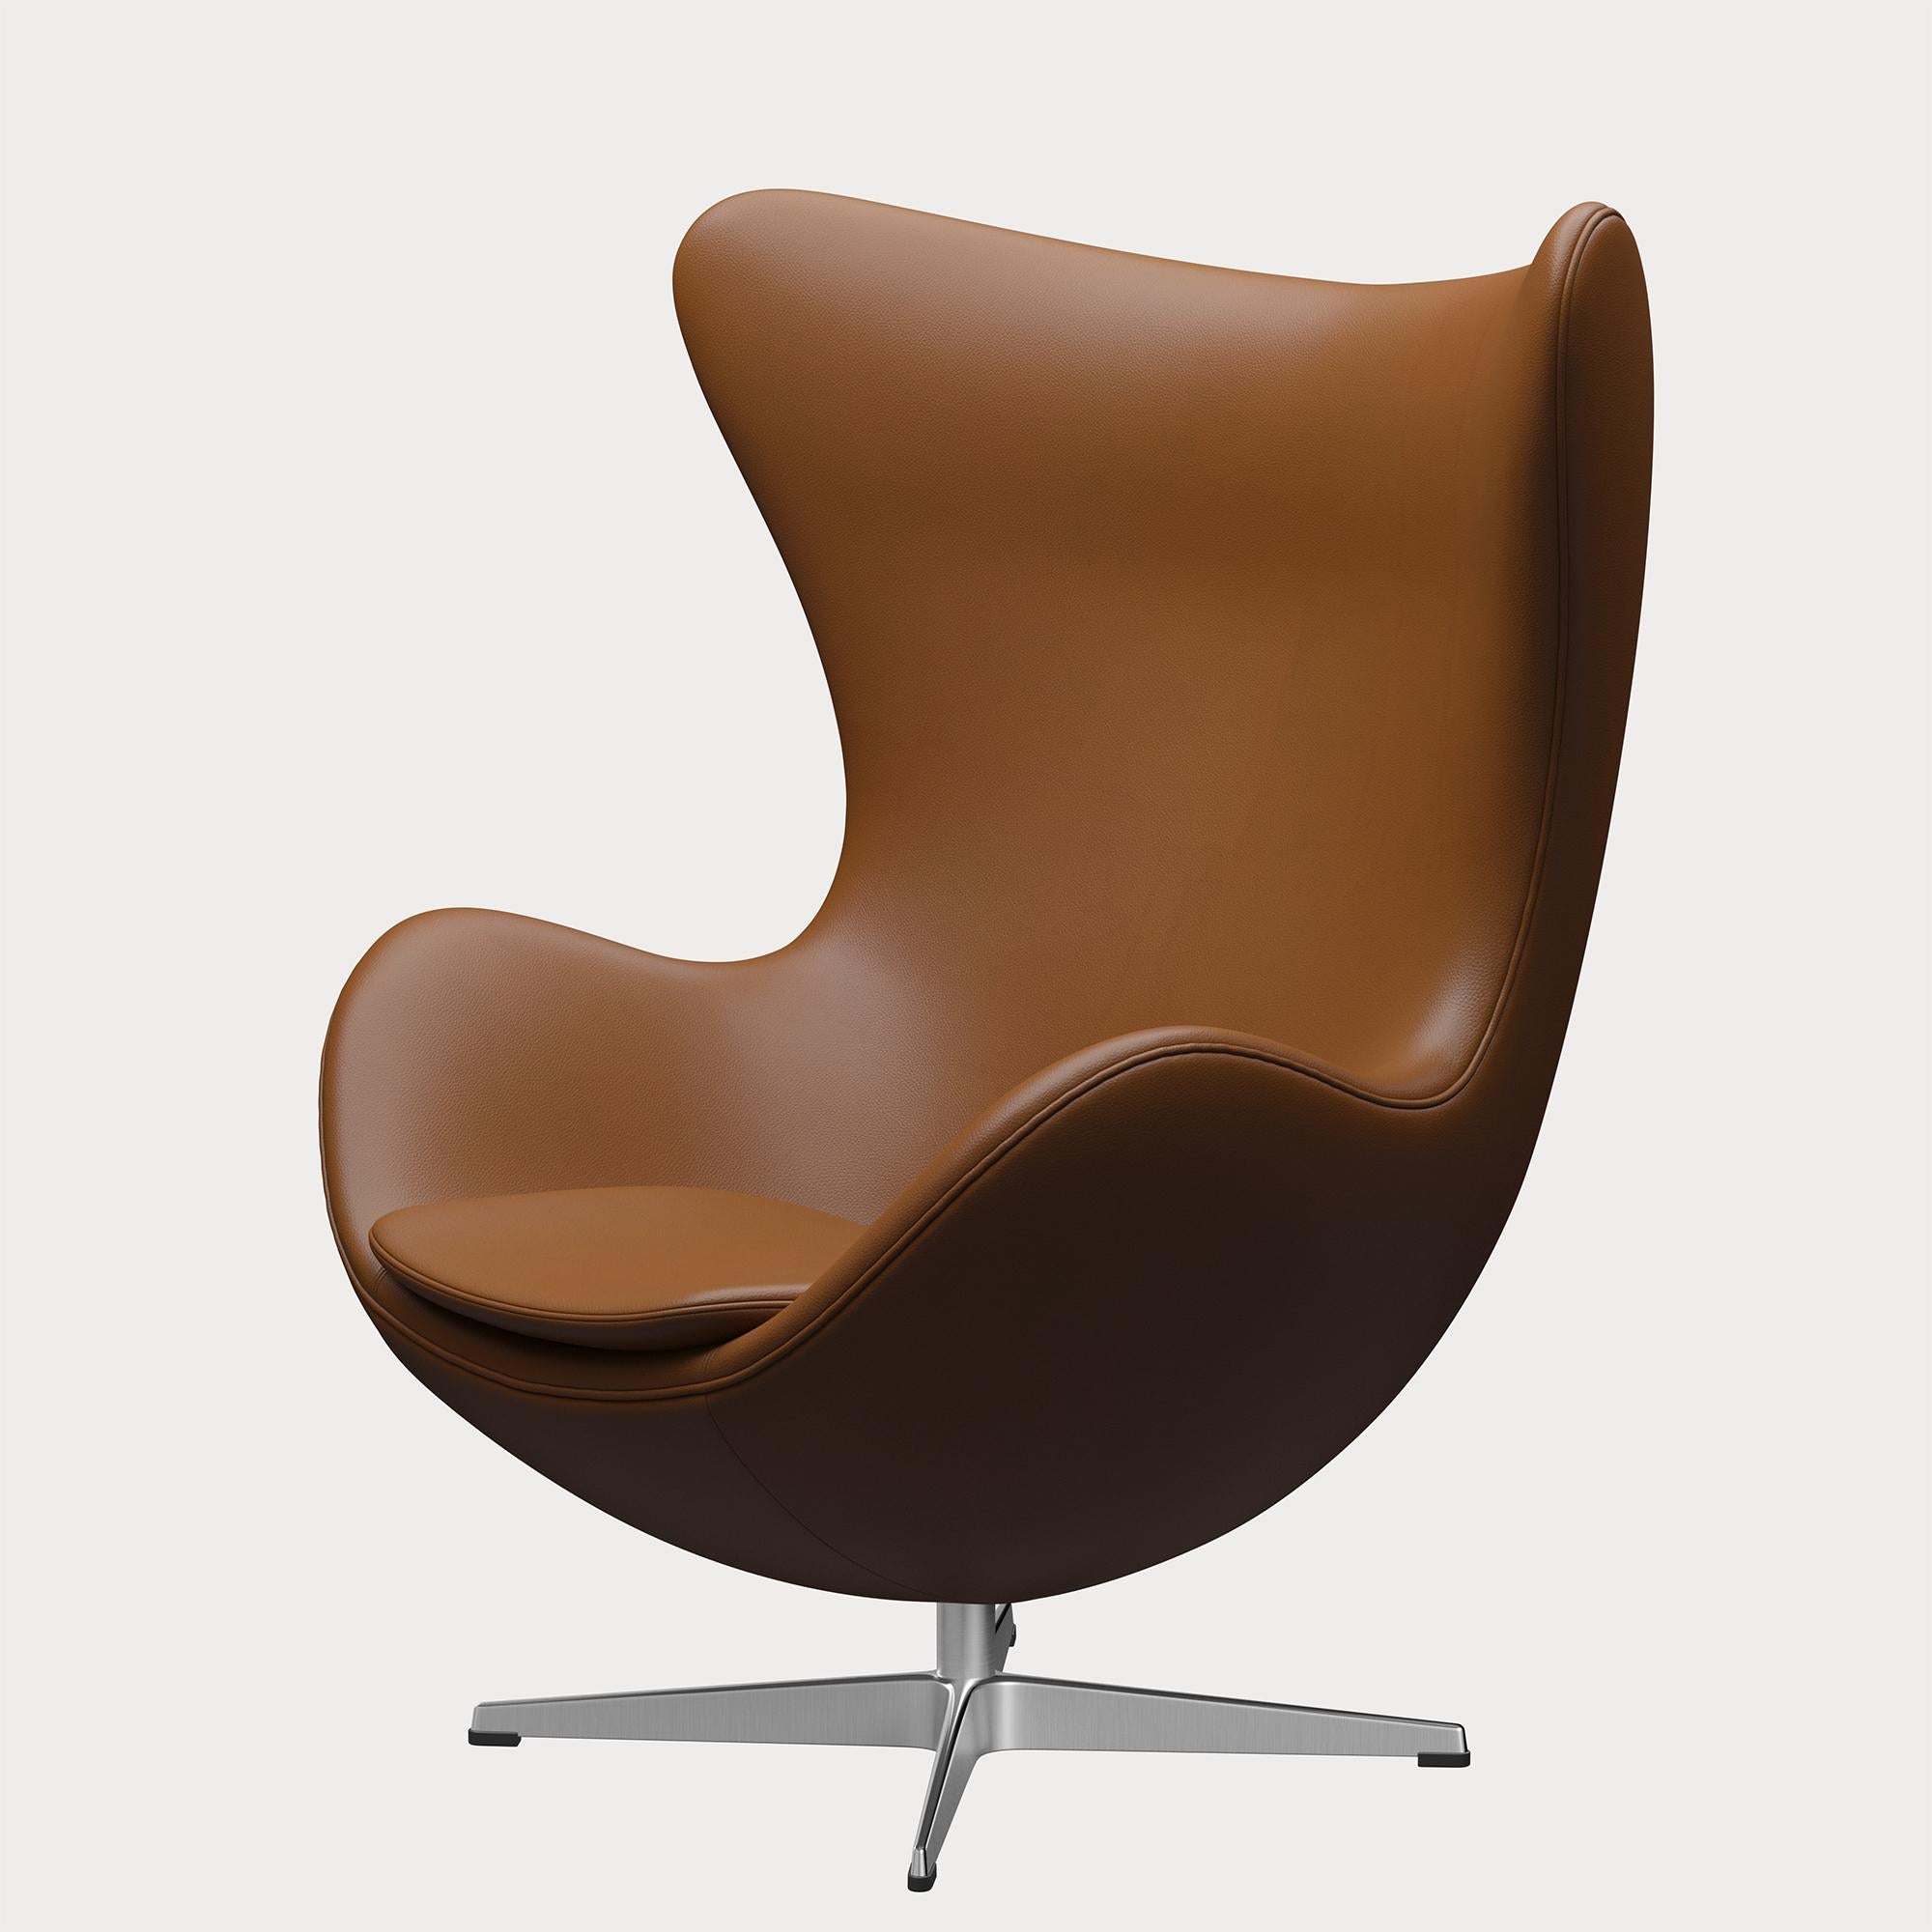 Arne Jacobsen 'Egg' Chair for Fritz Hansen in Leather Upholstery (Cat. 4) For Sale 3